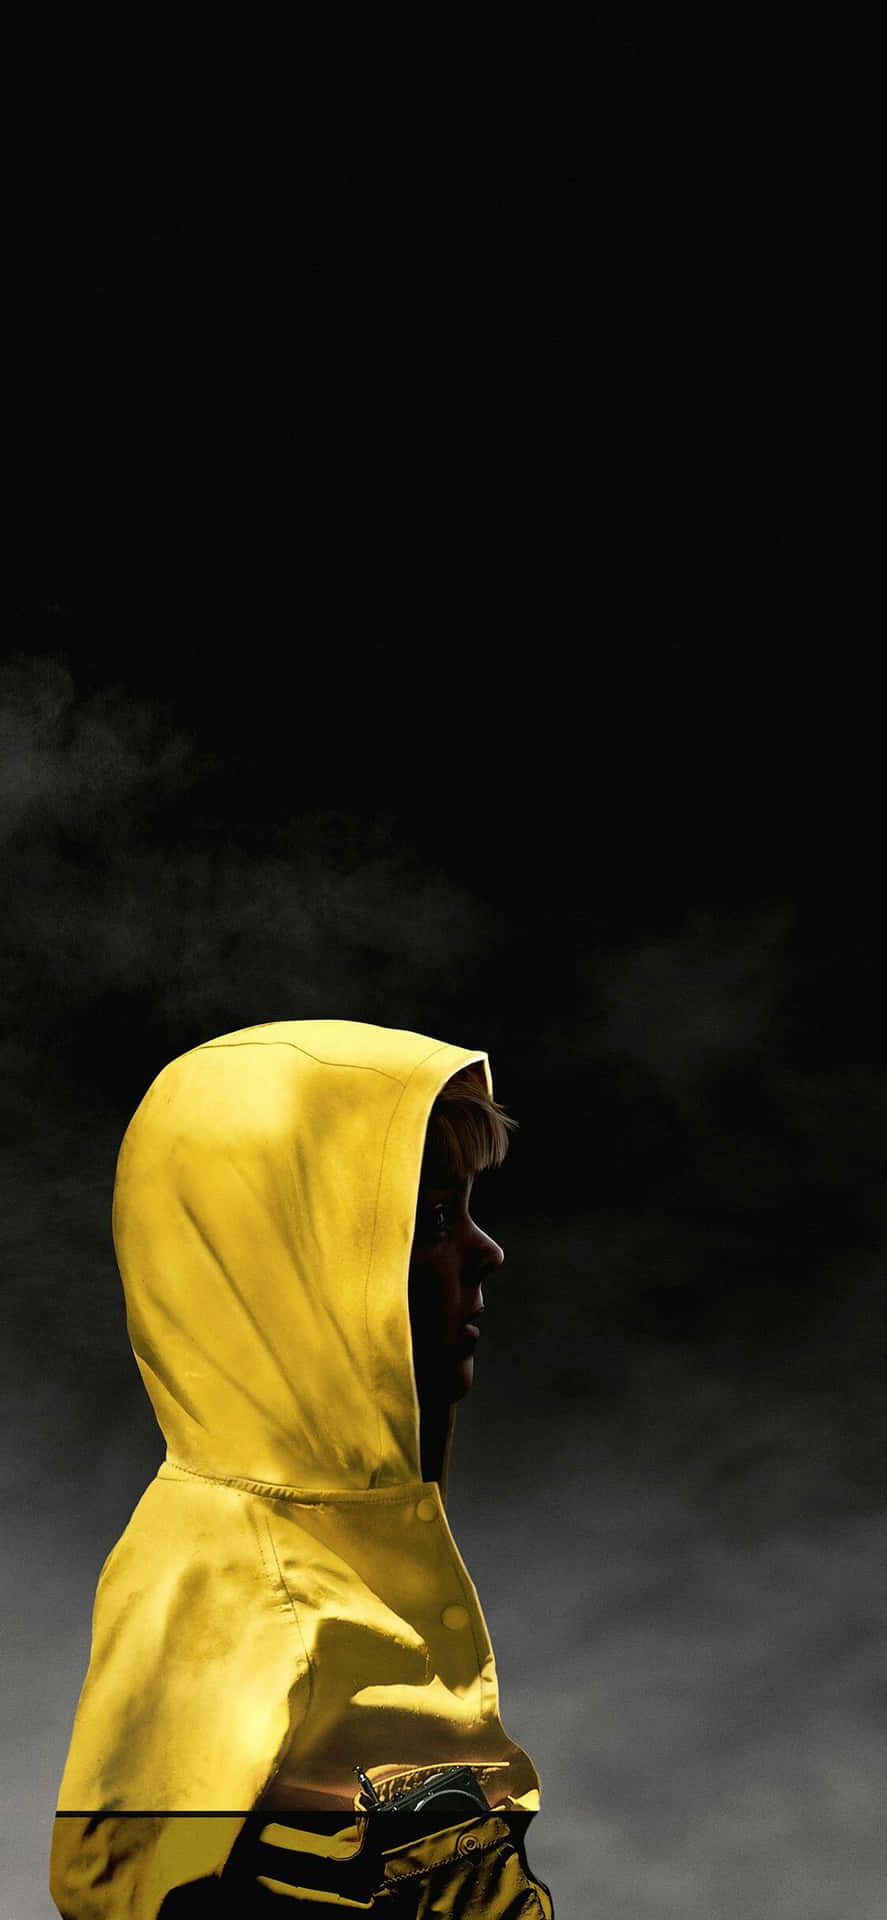 Eineperson In Einem Gelben Kapuzenpulli. Wallpaper